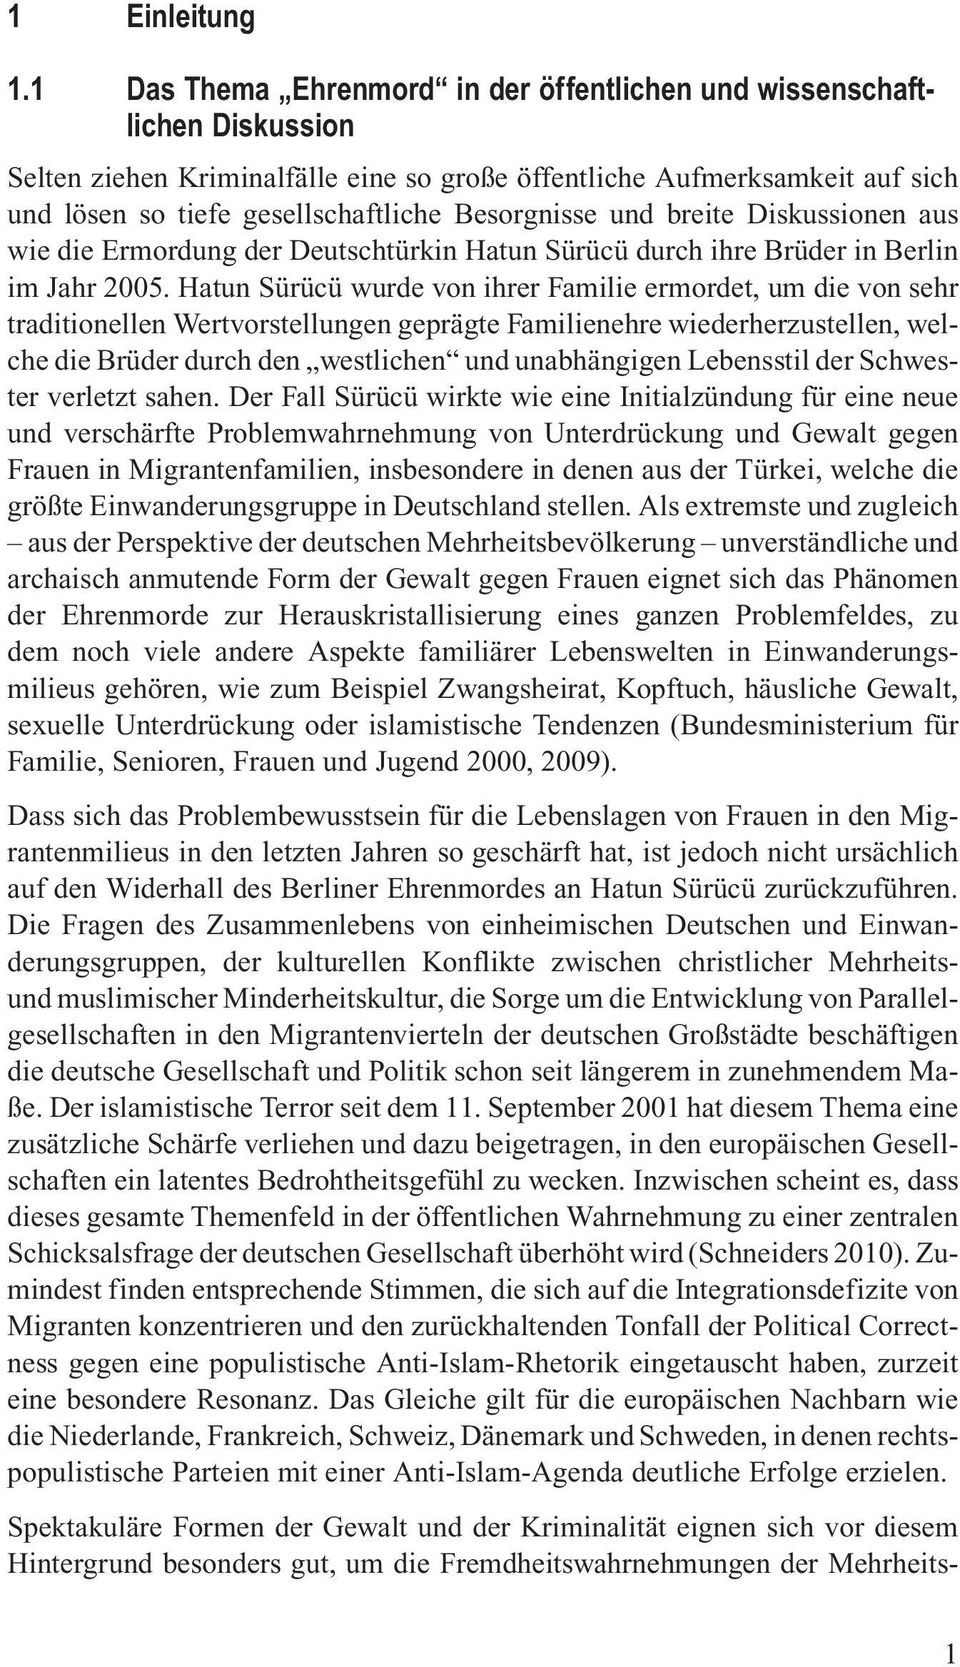 Besorgnisse und breite Diskussionen aus wie die Ermordung der Deutschtürkin Hatun Sürücü durch ihre Brüder in Berlin im Jahr 2005.